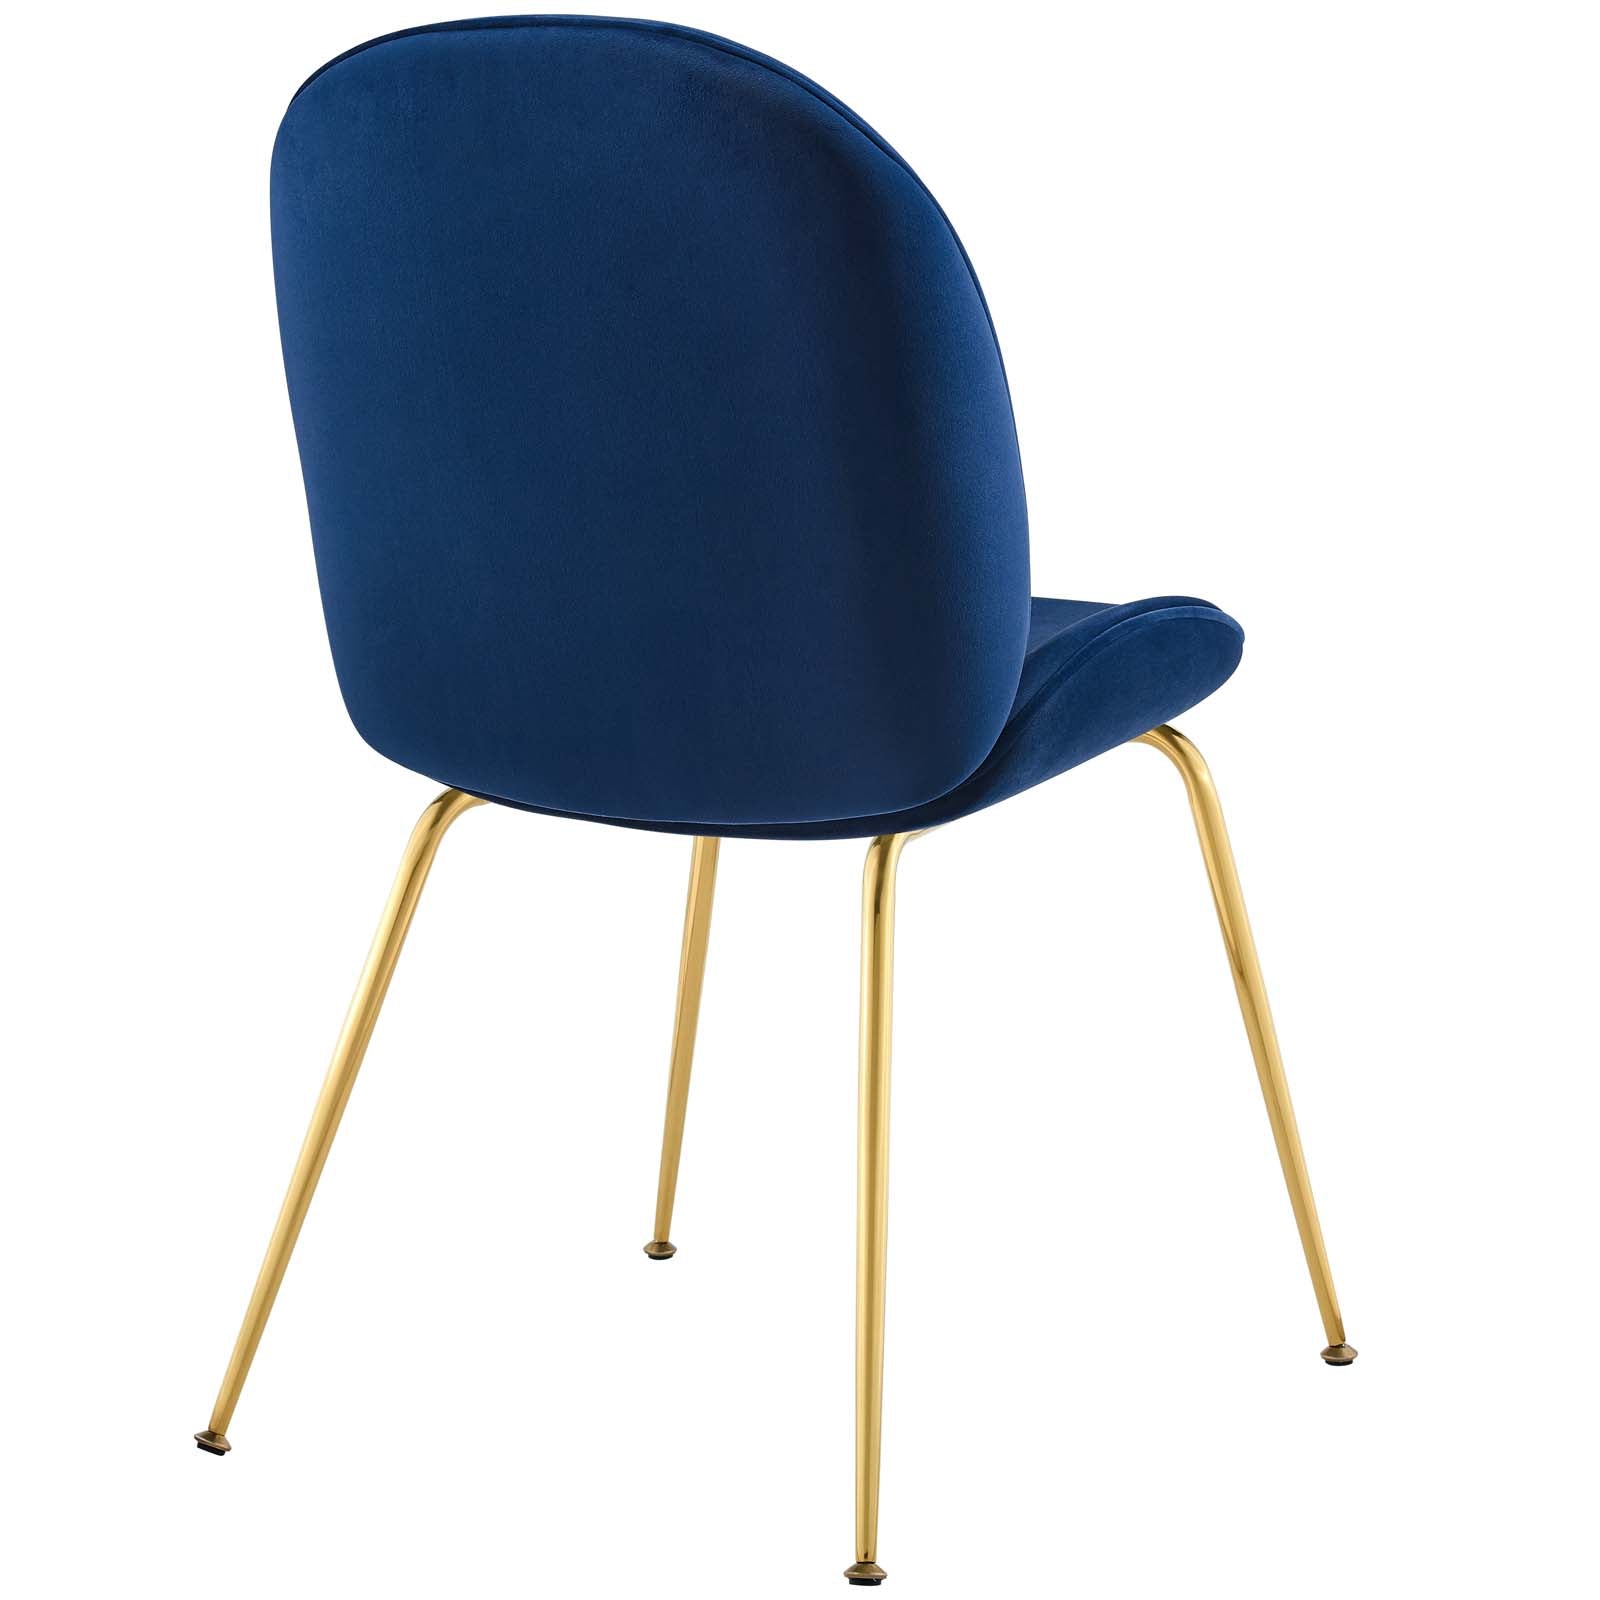 Scoop Gold Stainless Steel Leg Performance Velvet Dining Chair - East Shore Modern Home Furnishings